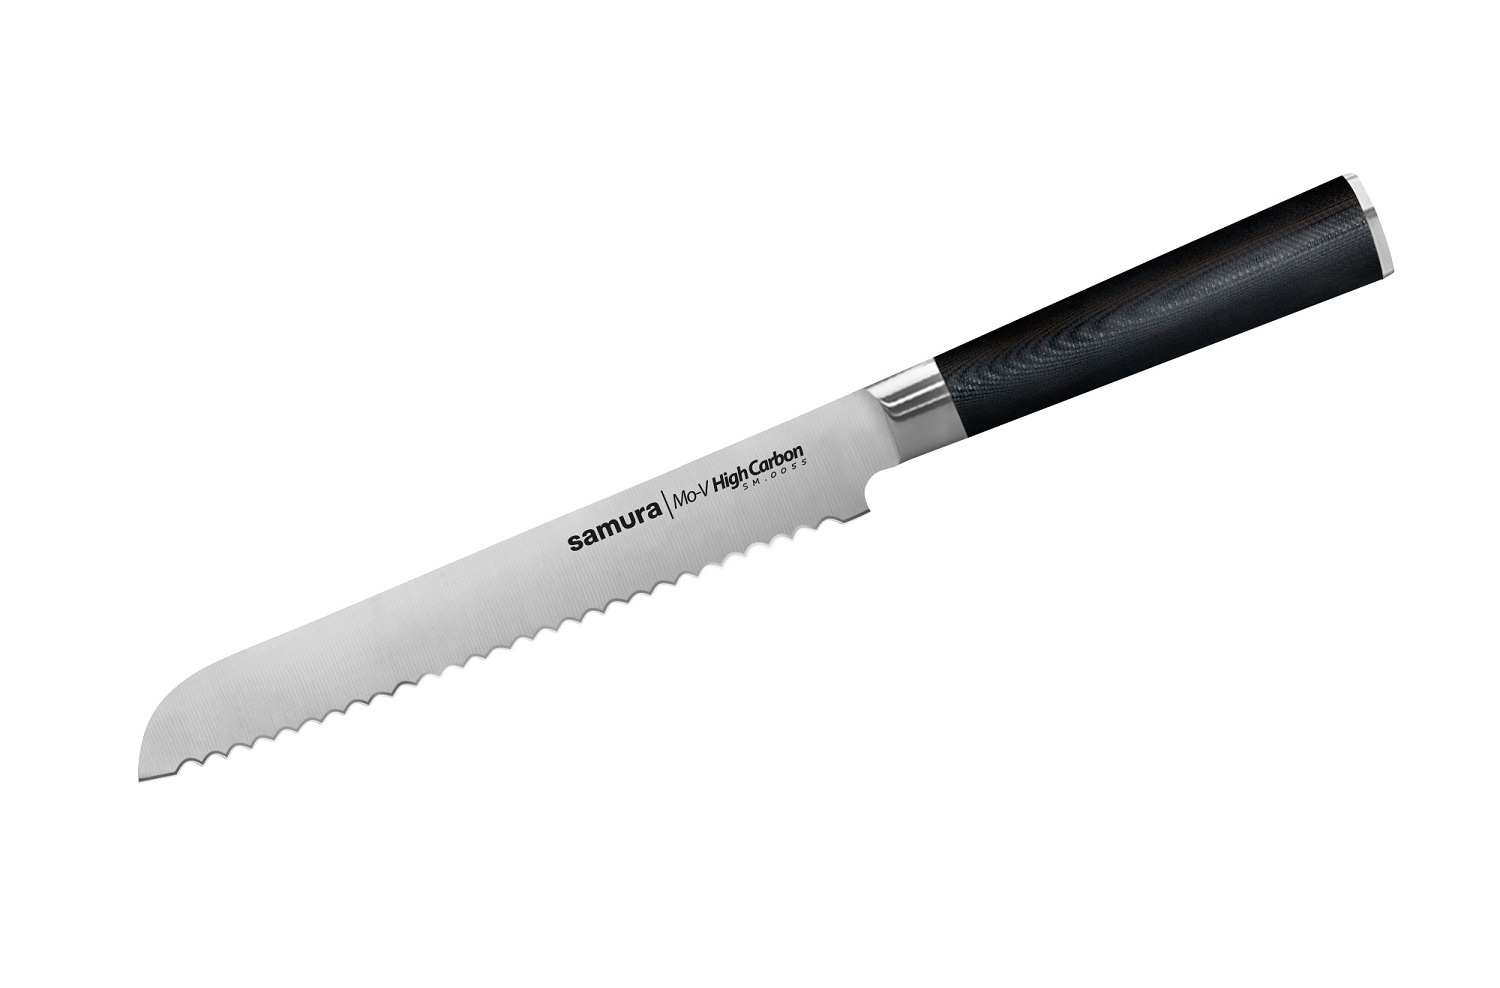 Нож Samura для хлеба Mo-V, 23 см, G-10 нож samura для нарезки mo v stonewash 23 см g 10